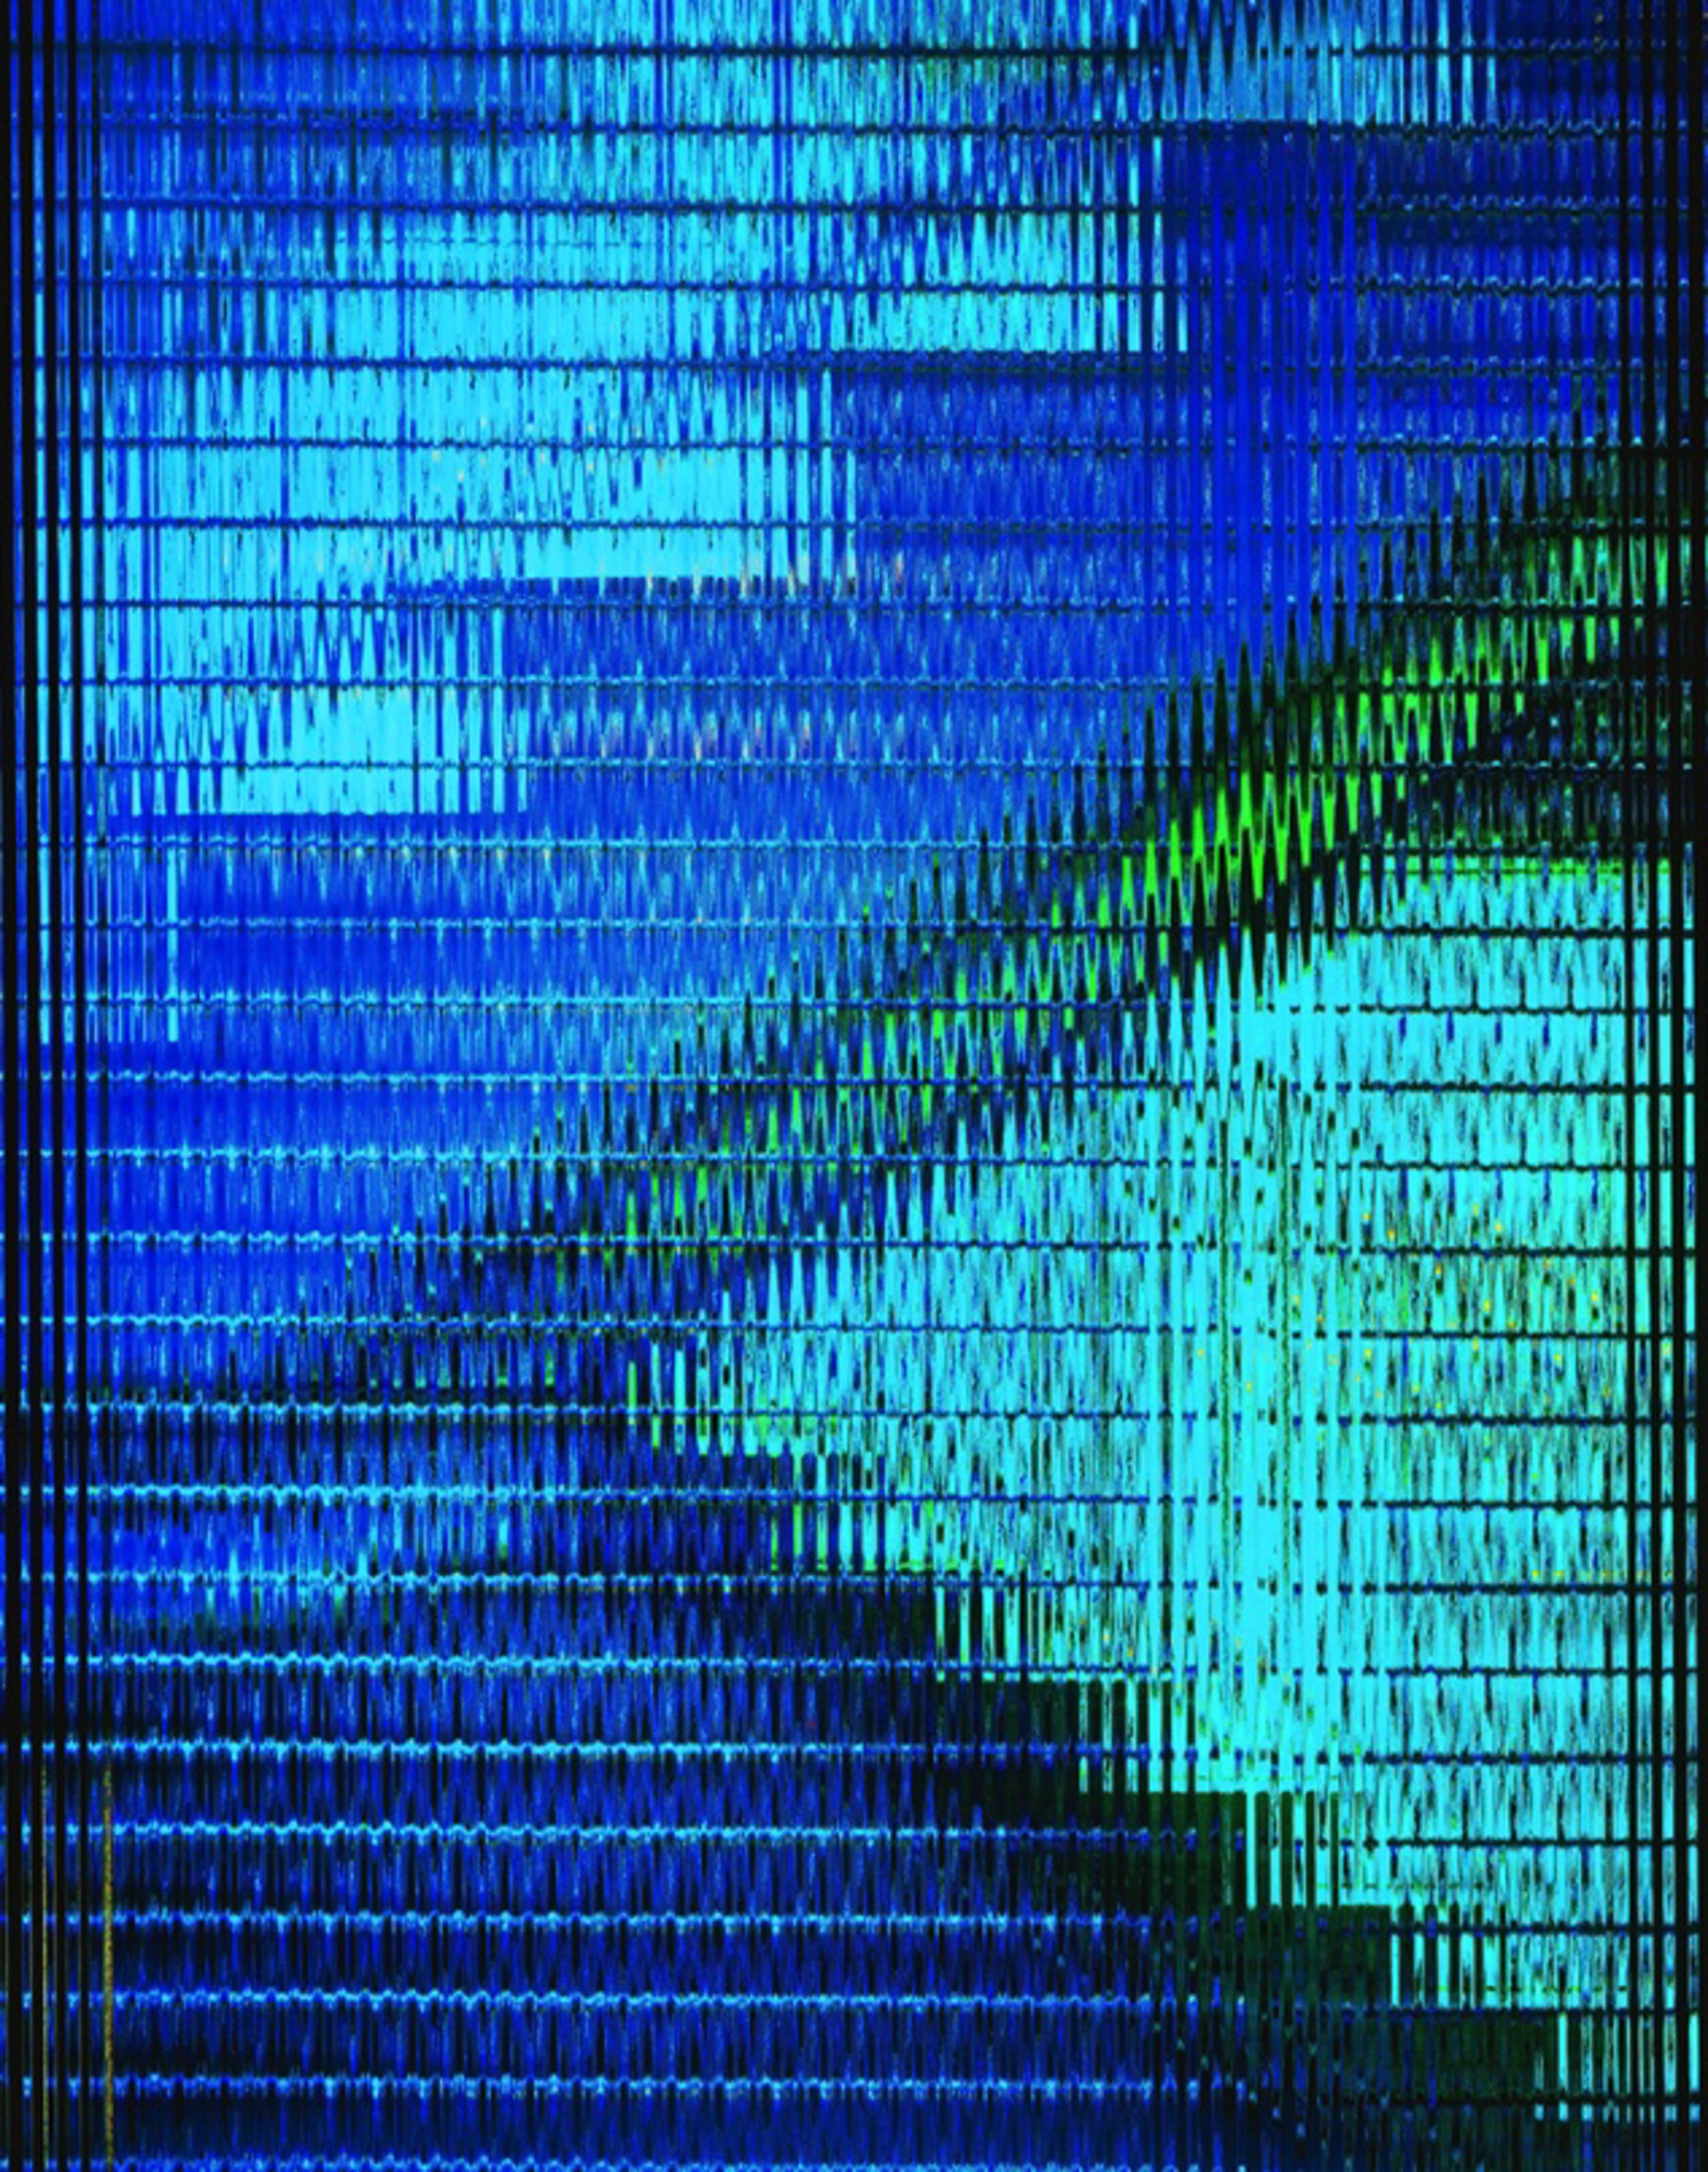 Blue Stairways (Urban Luminosity) by Michael Eastman